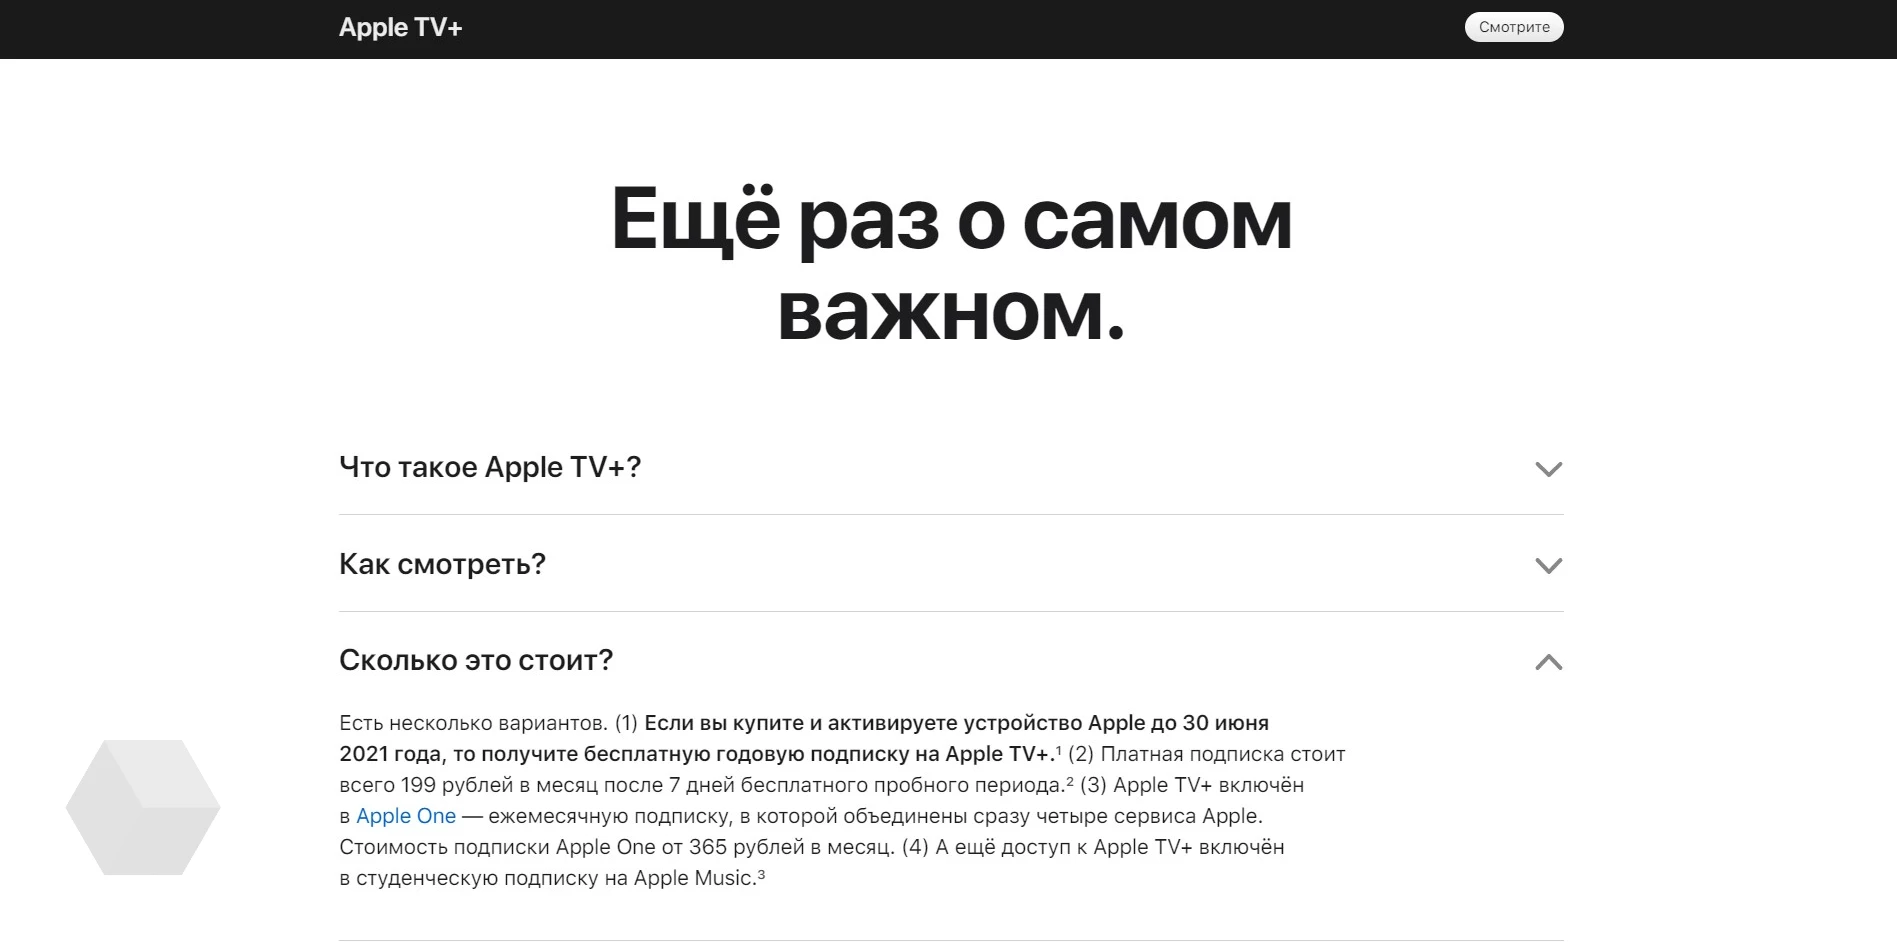 Apple tv 3 — обзор возможностей и функциональности